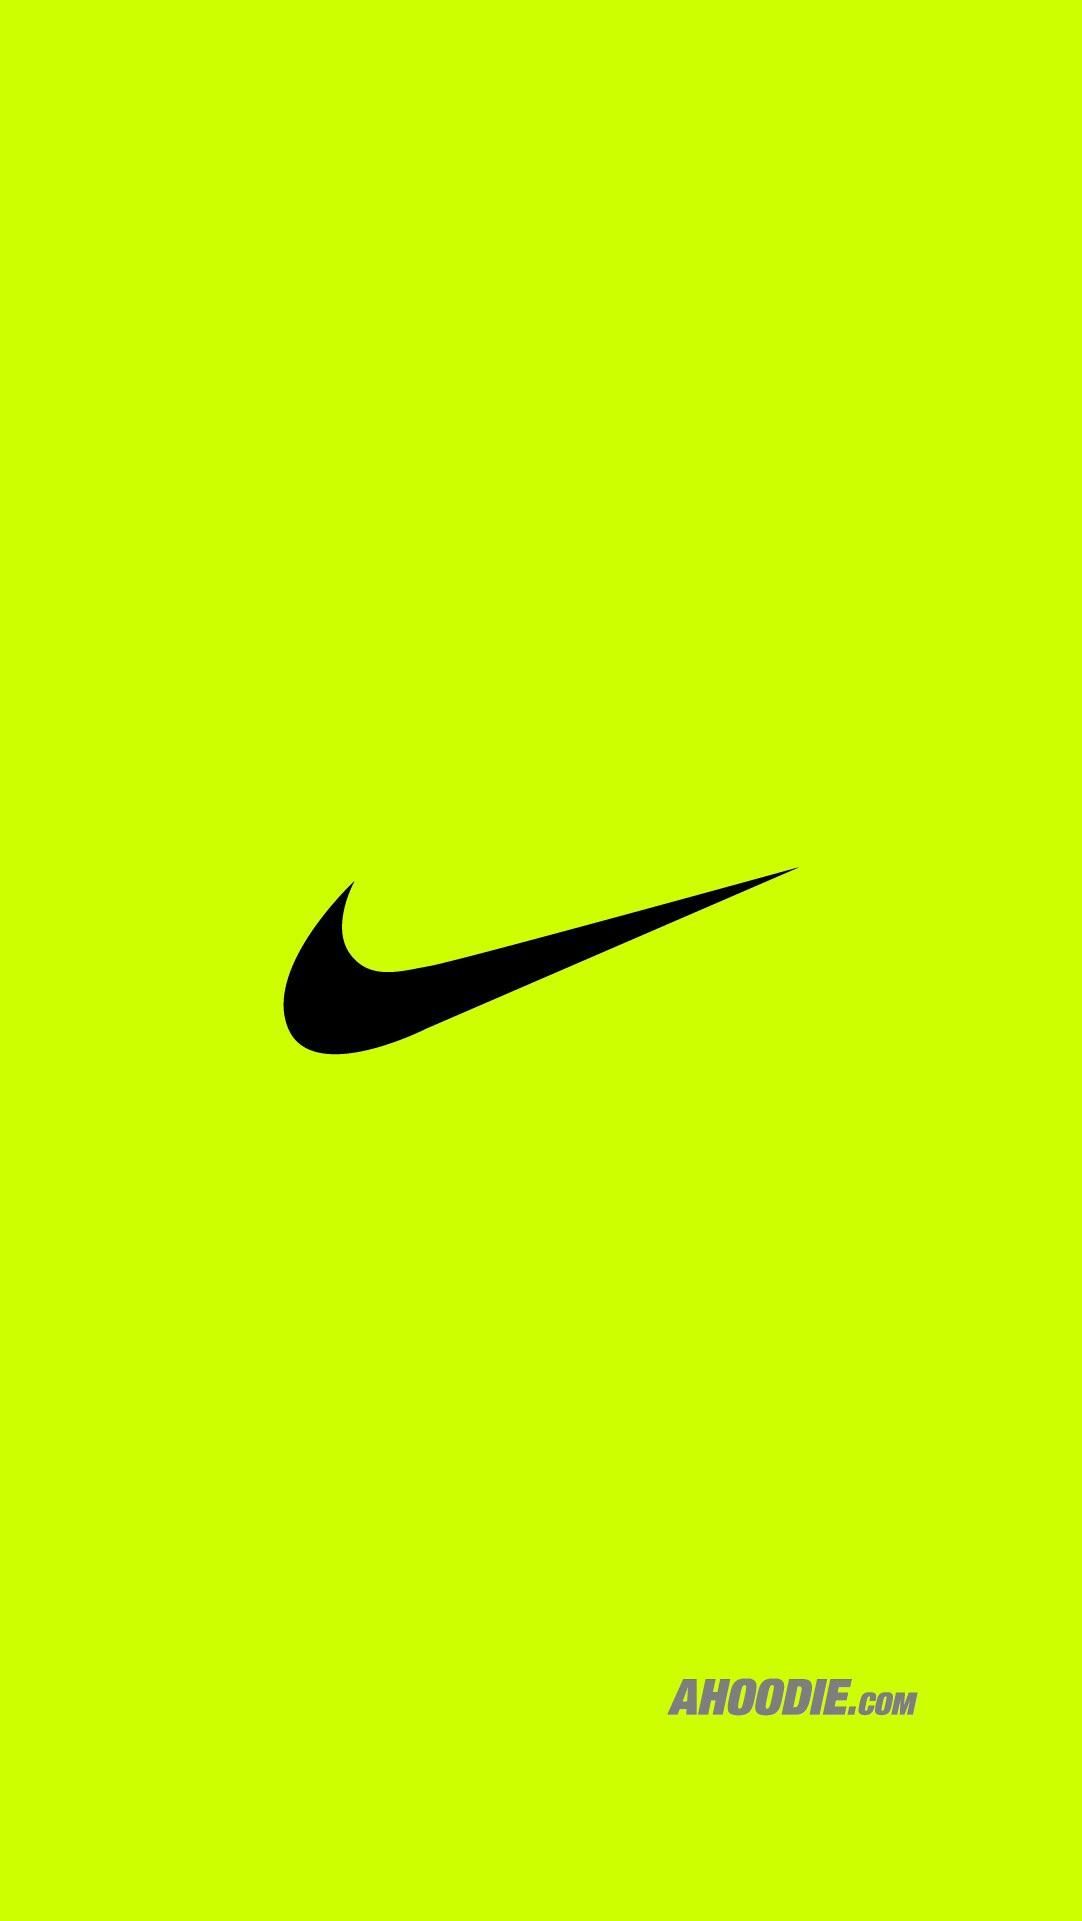 Nike logos ideas. nike wallpaper, nike, nike logo wallpaper